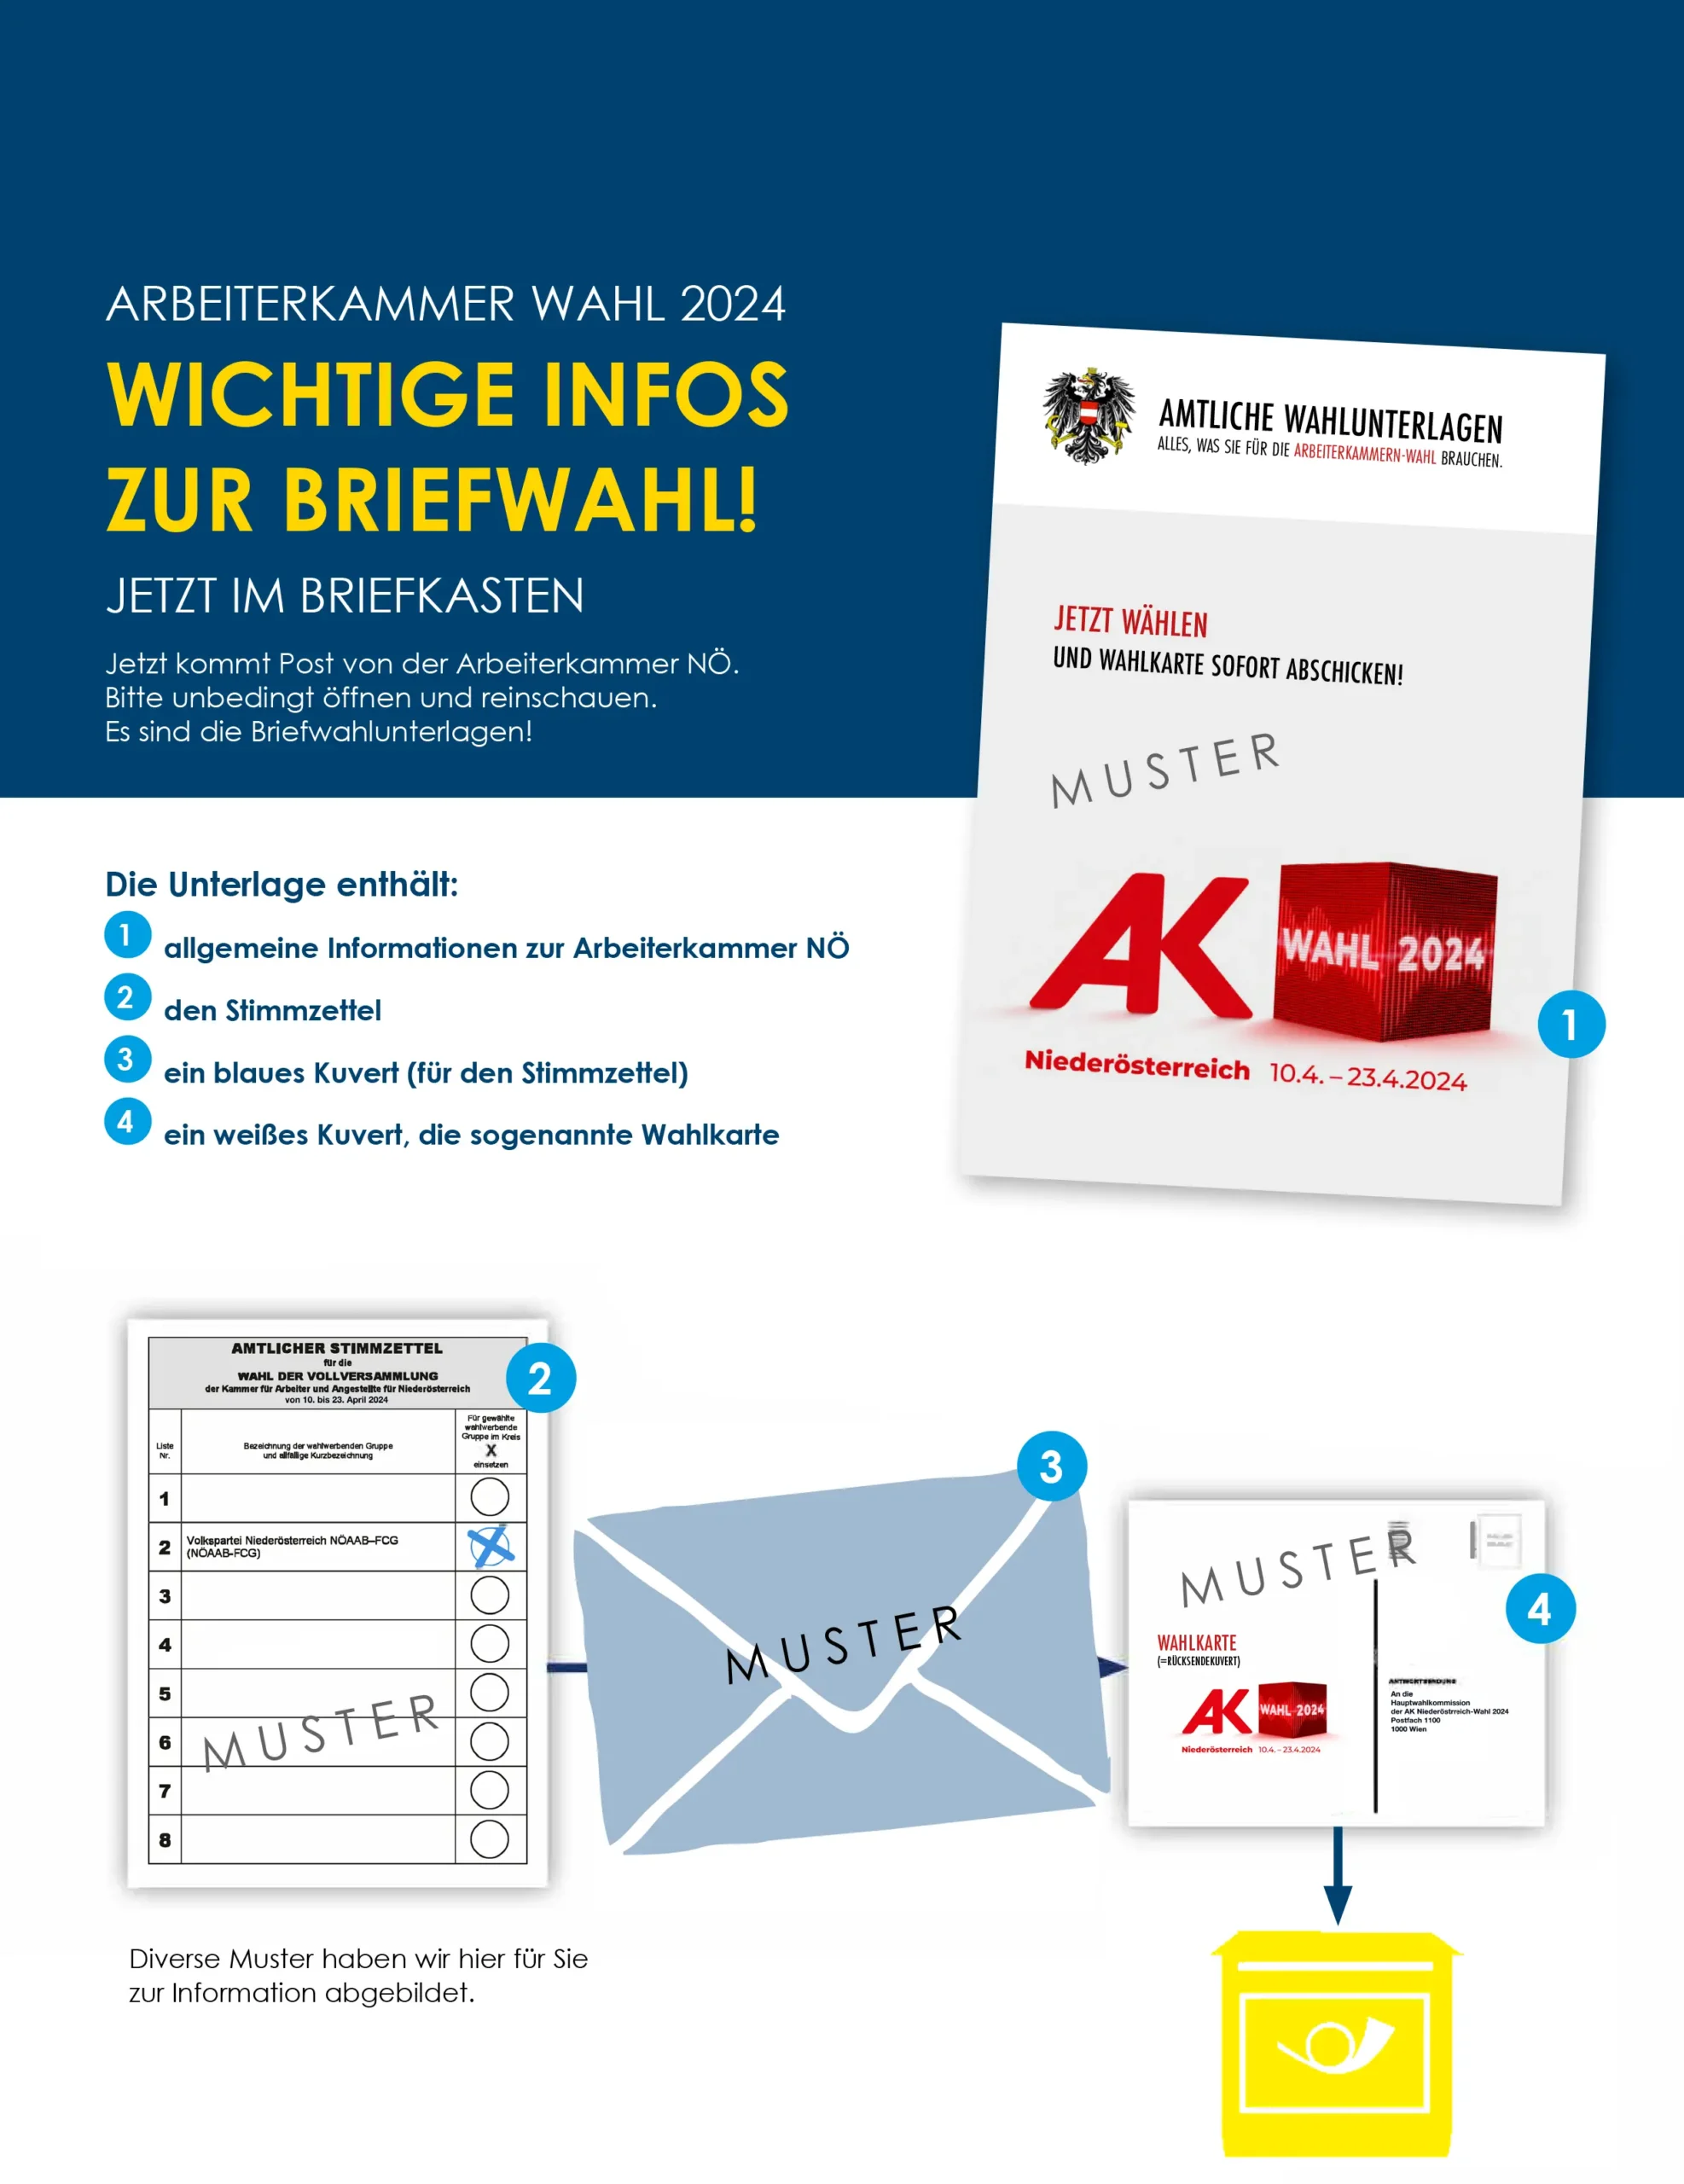 Die Arbeiterkammerwahl in Niederösterreich hat begonnen!